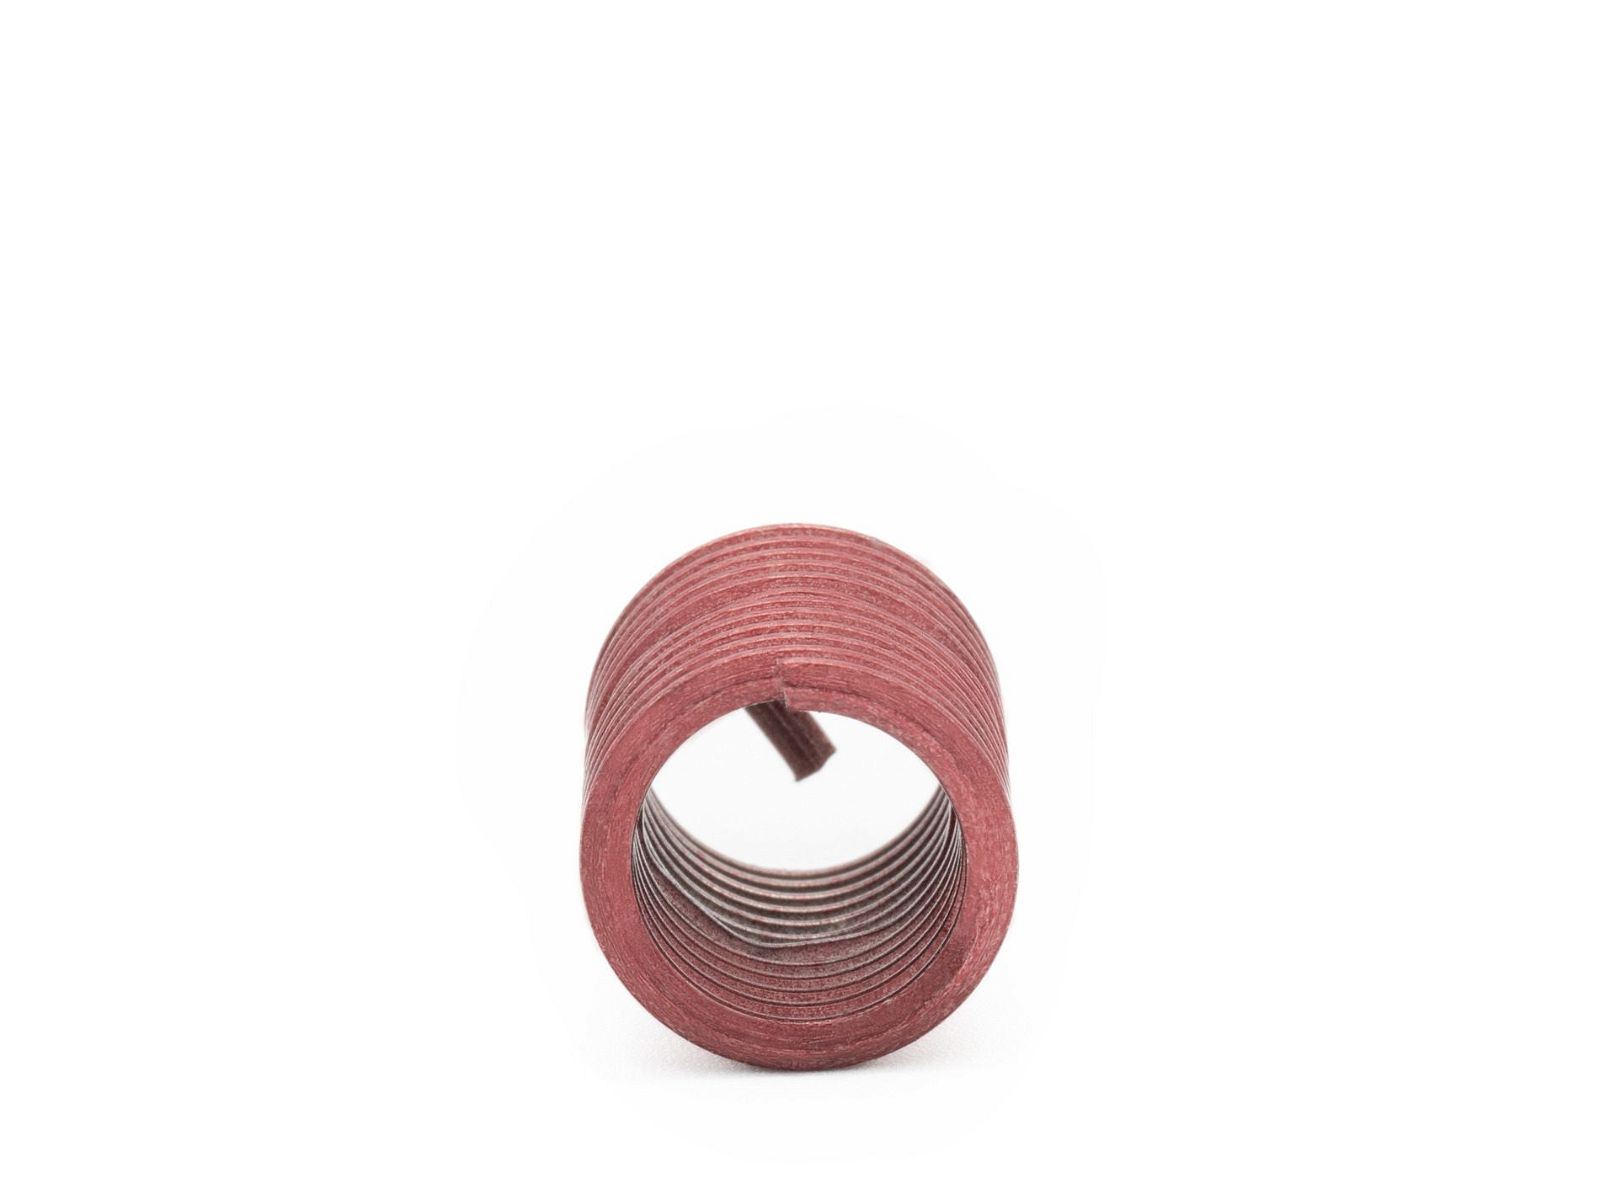 BaerCoil Wire Thread Inserts M 2.2 x 0.45 - 2.0 D (4.4 mm) - screw grip (screw locking) - 100 pcs.